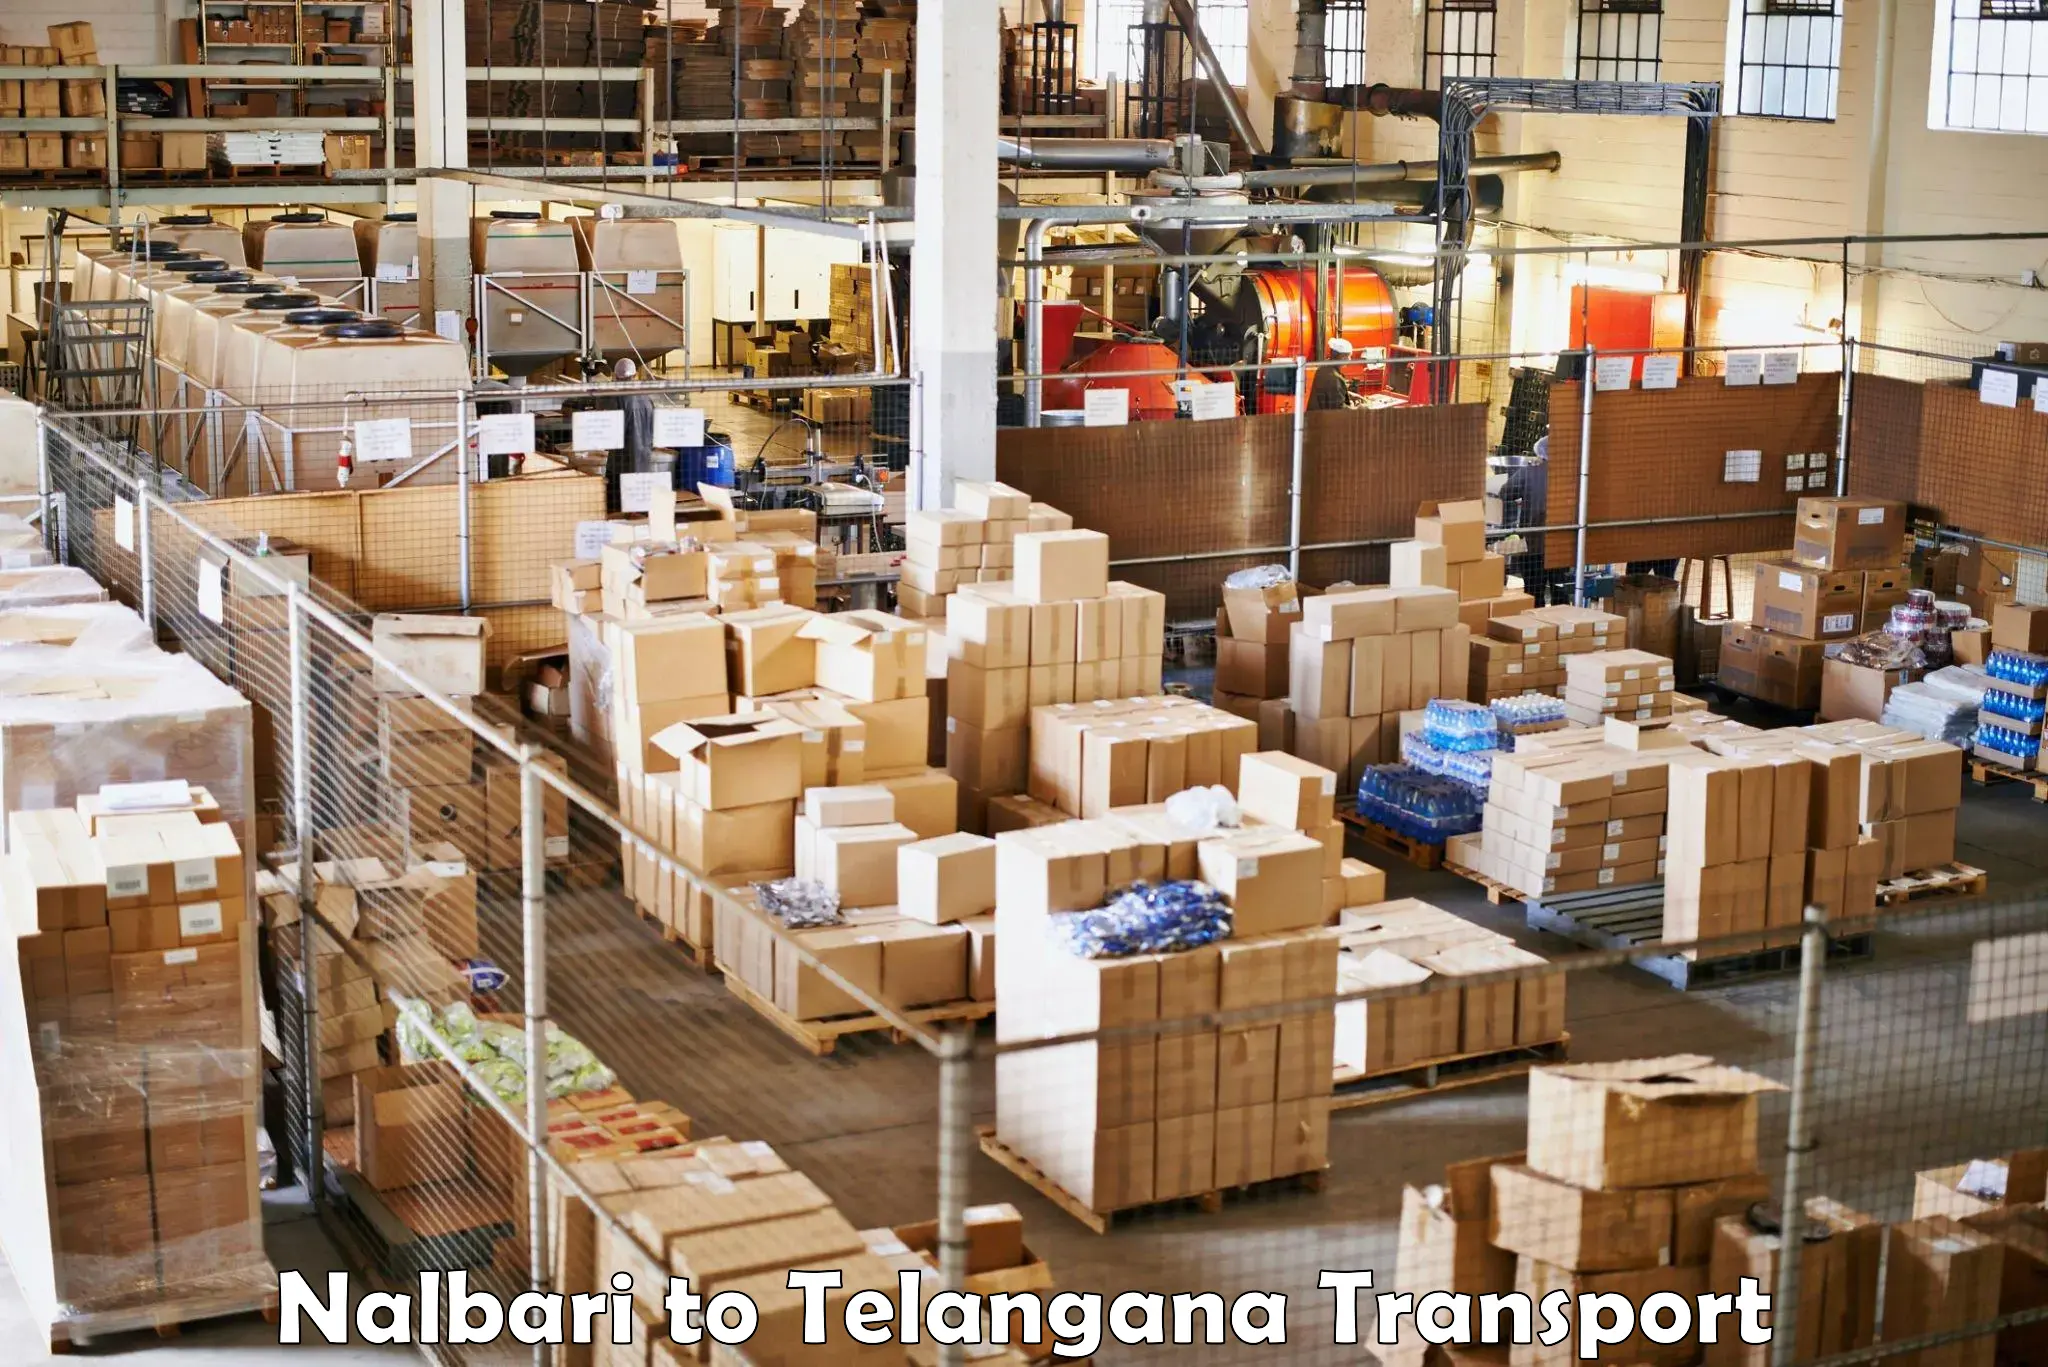 Truck transport companies in India Nalbari to Nellikuduru